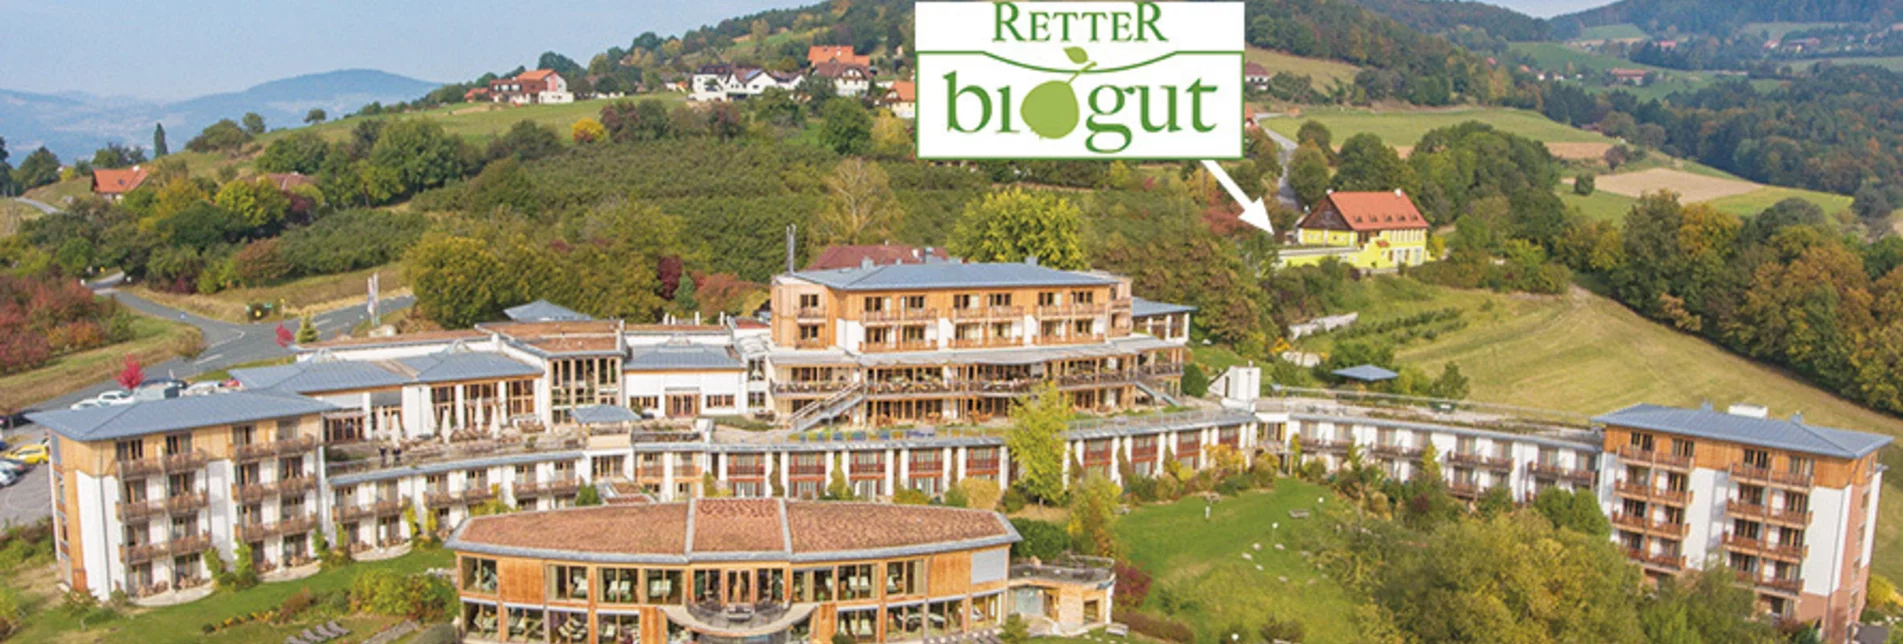 RETTER Bio-Natur-Resort mit RETTER BioGut und Wallfahrtskirche Pöllauberg im Hintergrund | © Tourismusverband Naturpark Pöllauer Tal